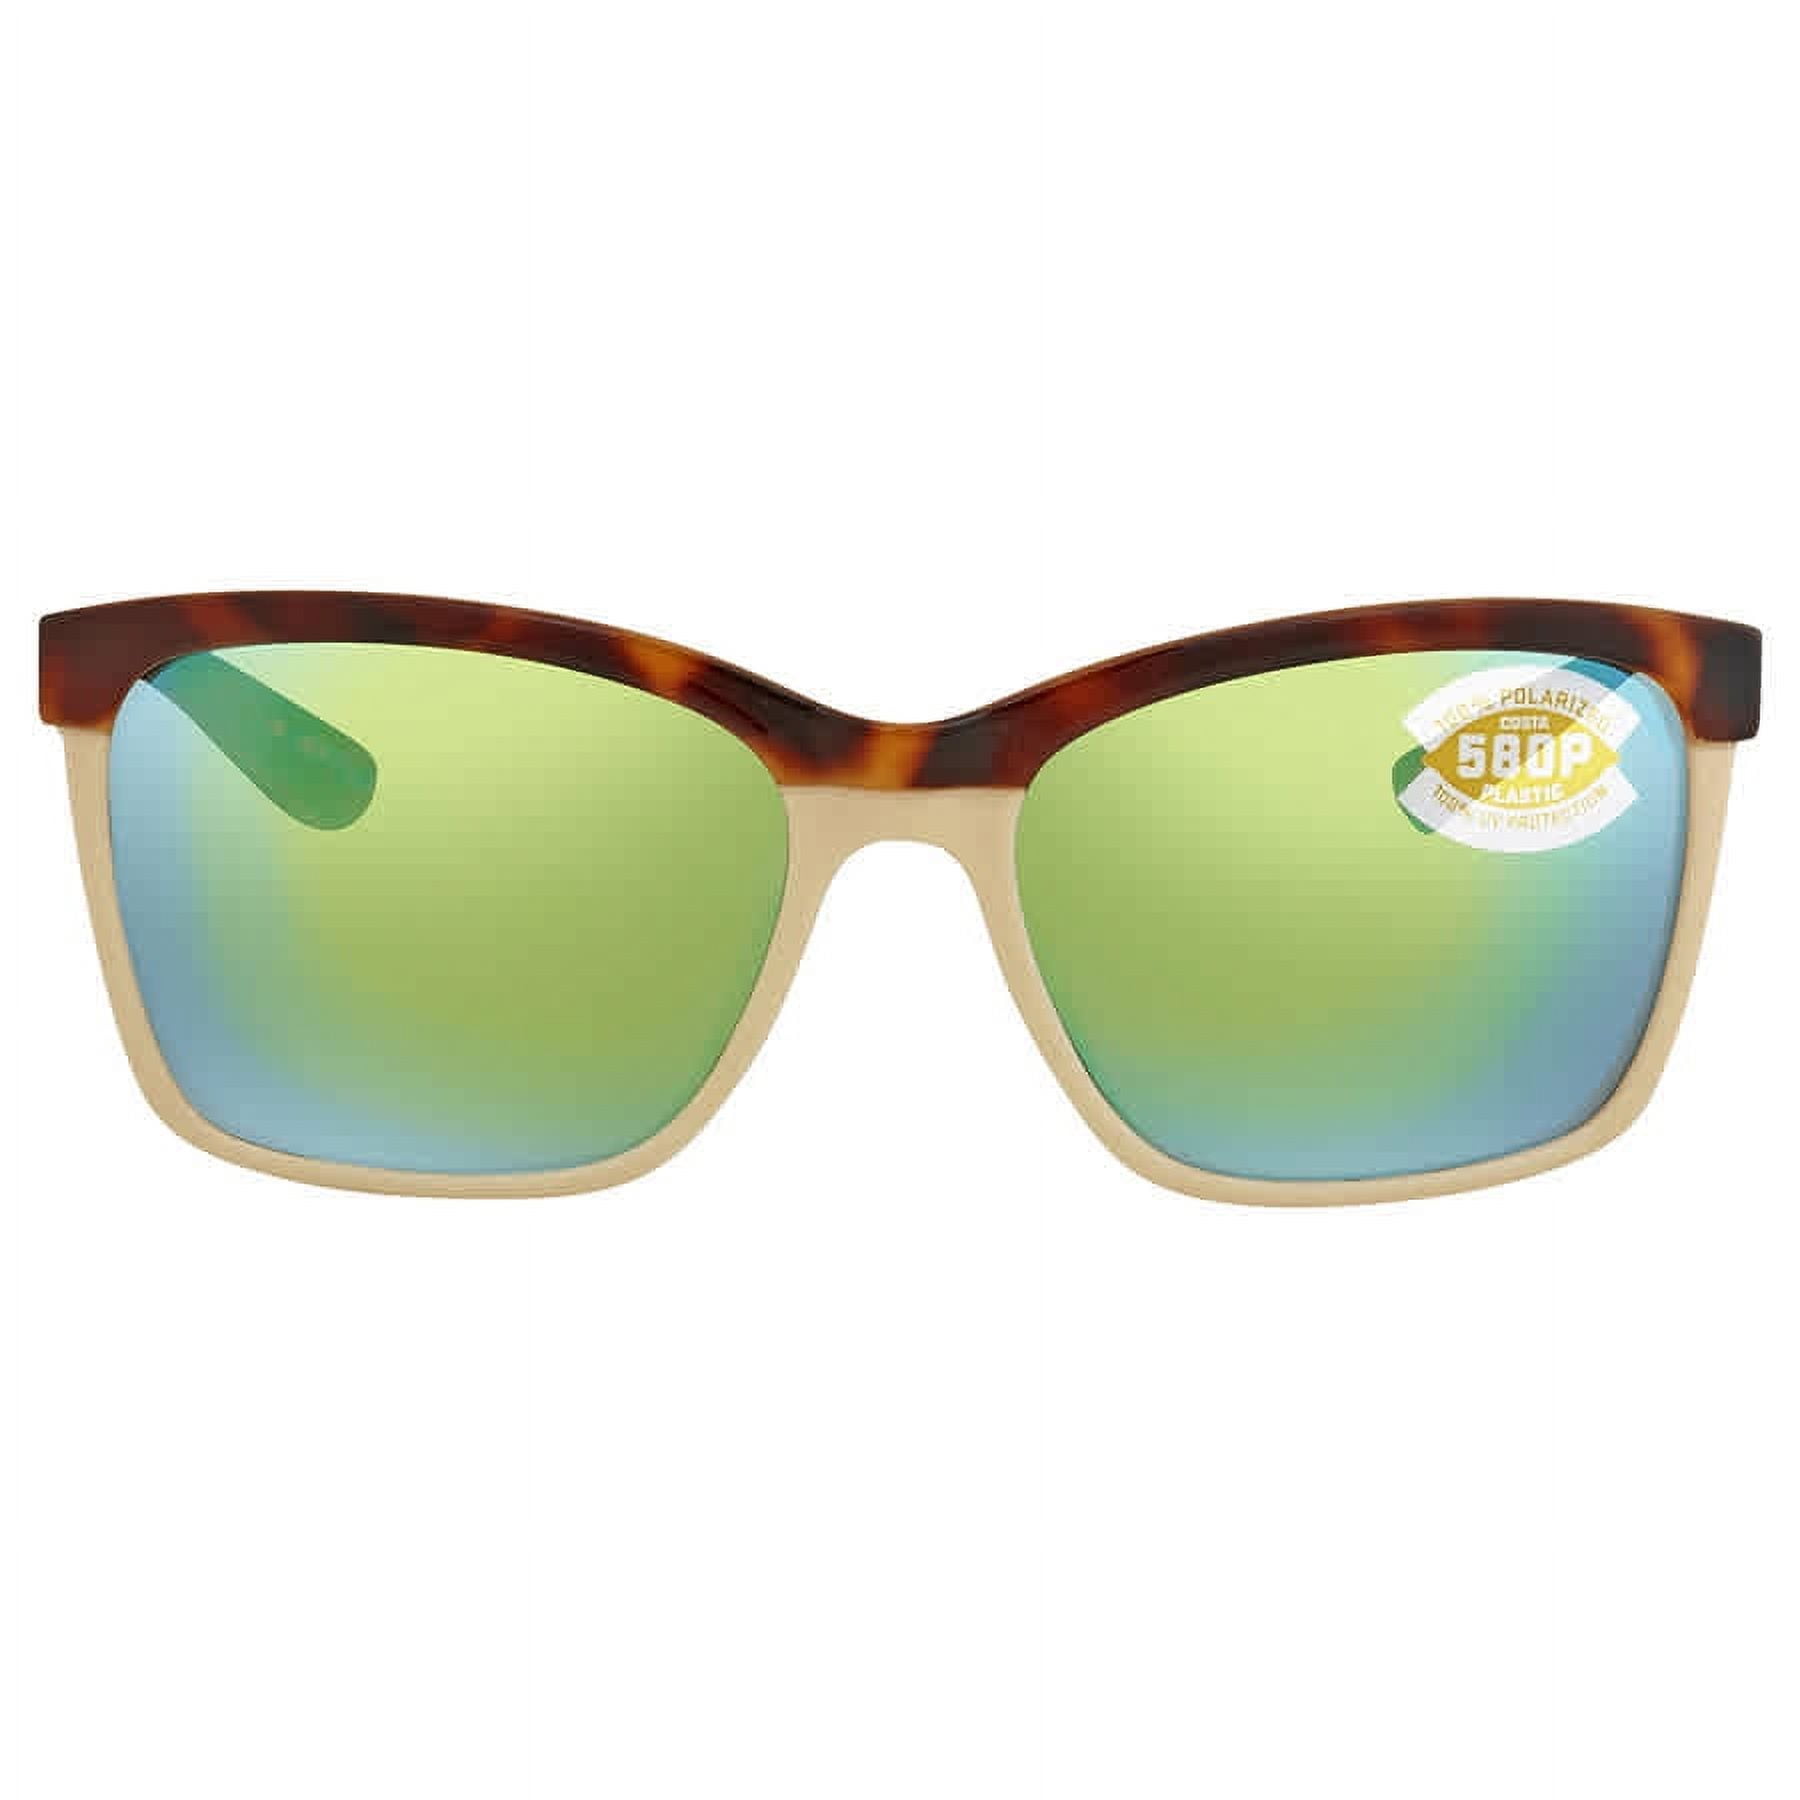 Costa Anaa Sunglasses Retro Tort/Cream/Mint / Copper - 580P